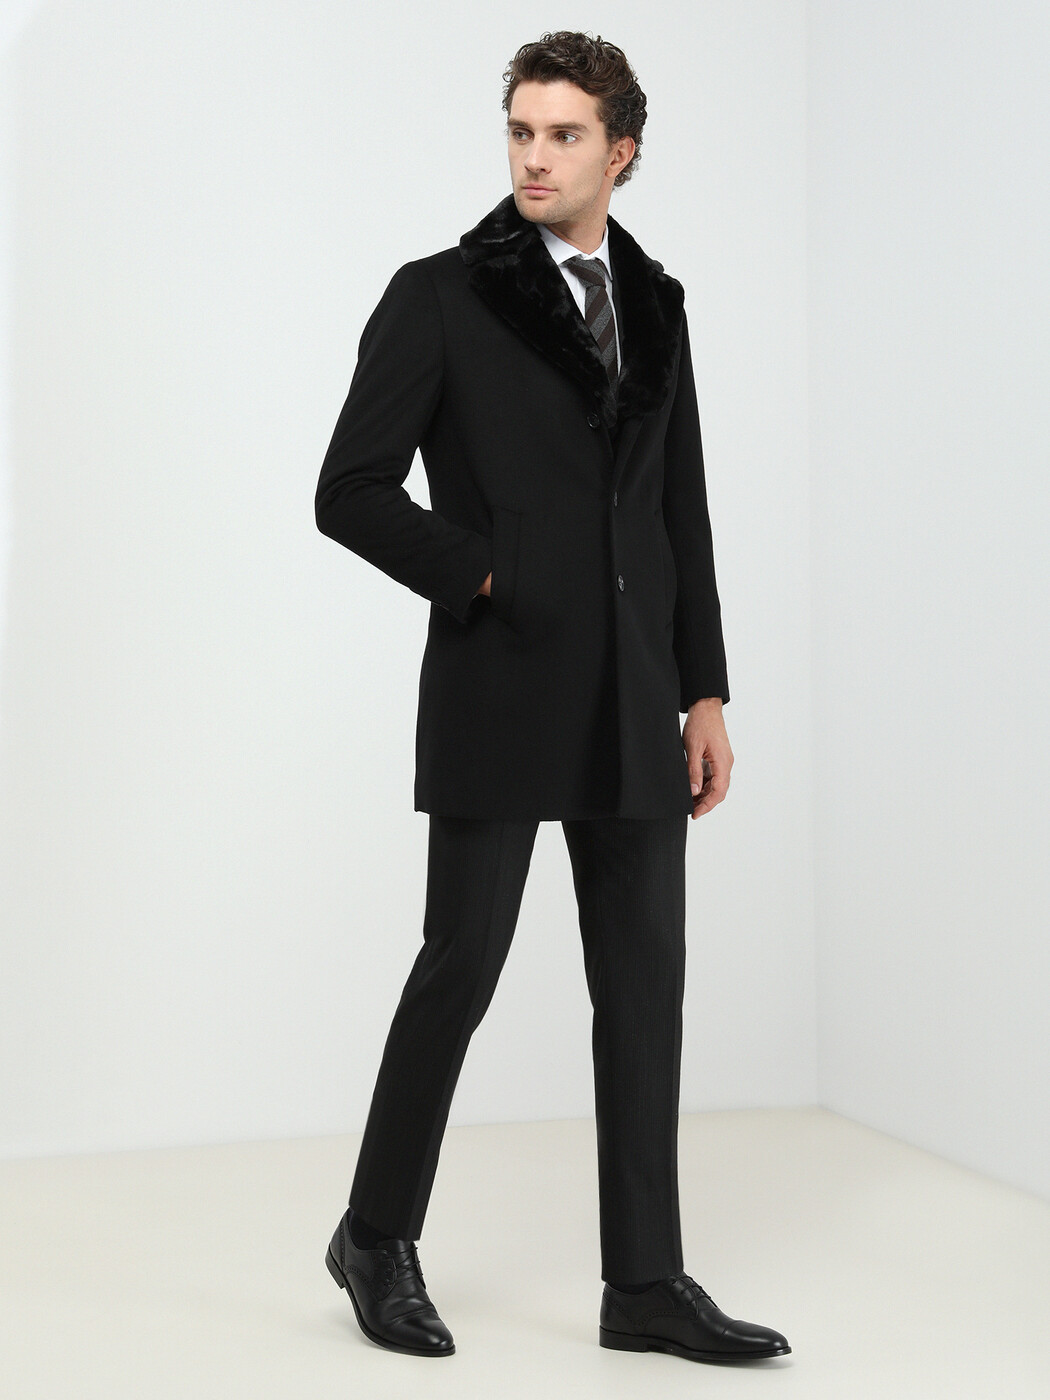 KİP - Siyah Dokuma Palto (1)